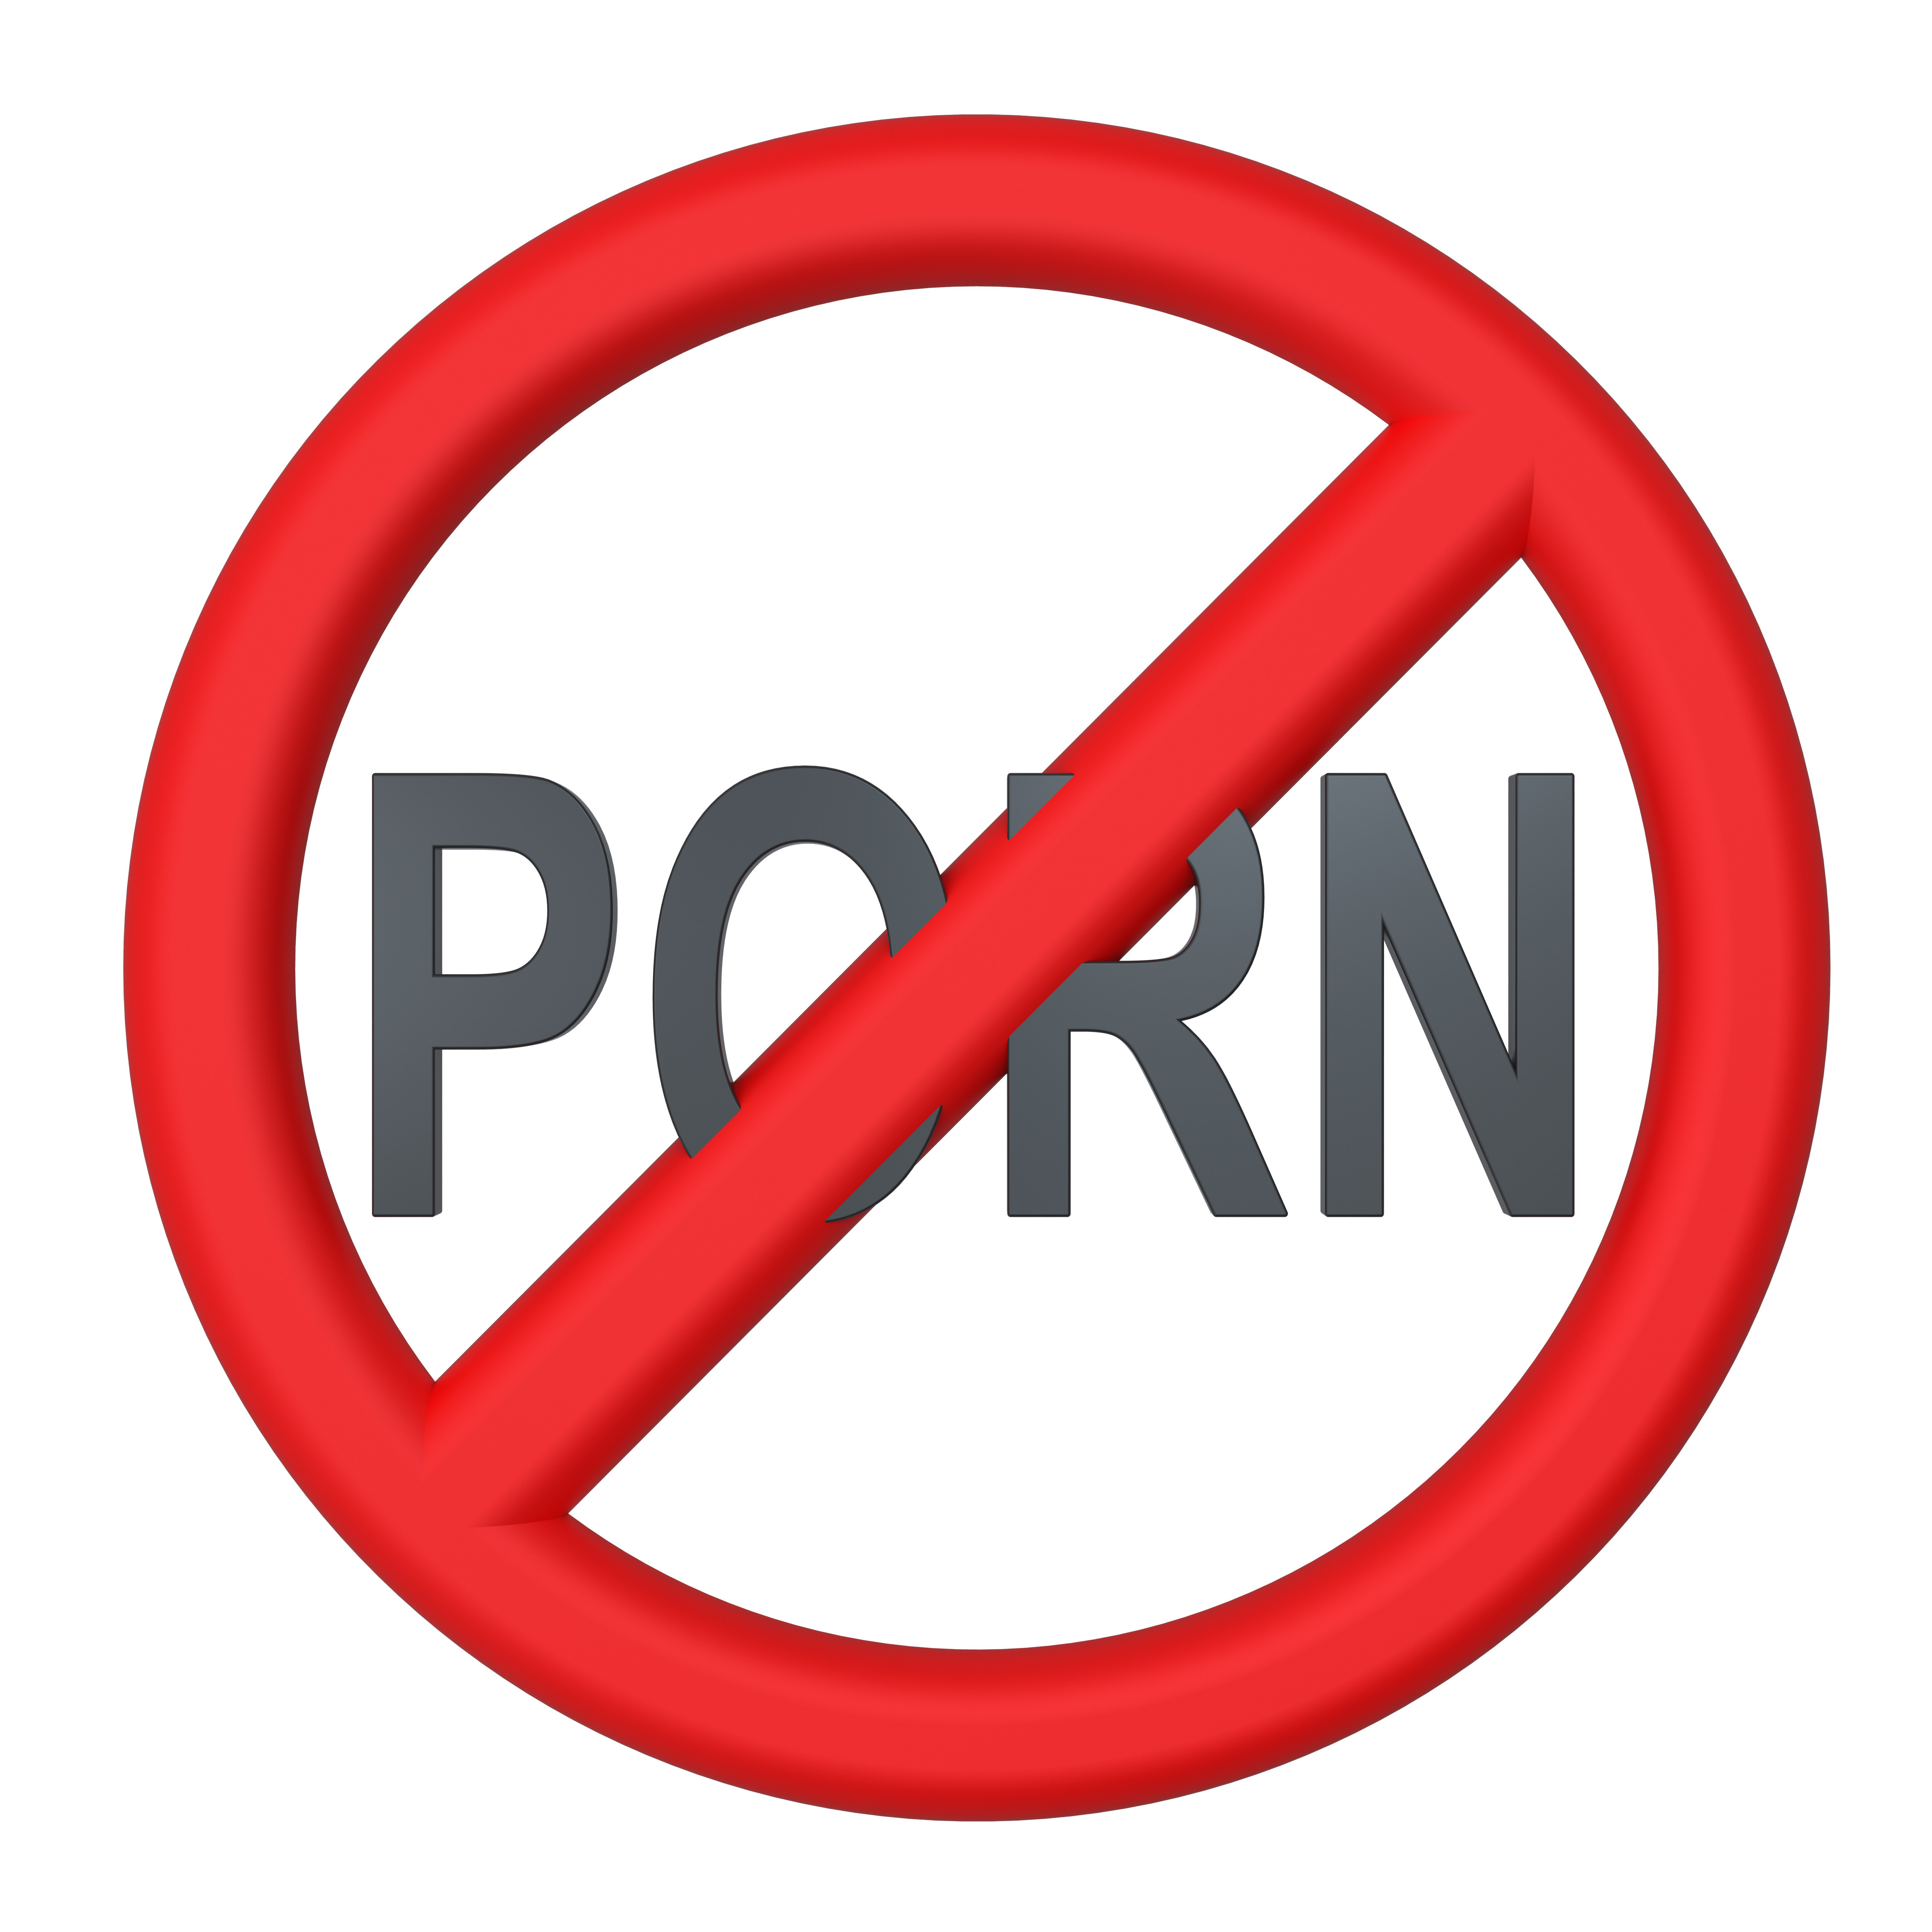 Quitting Porn Tiny Girls - How to Finally Quit Porn Addiction | SoundVision.com